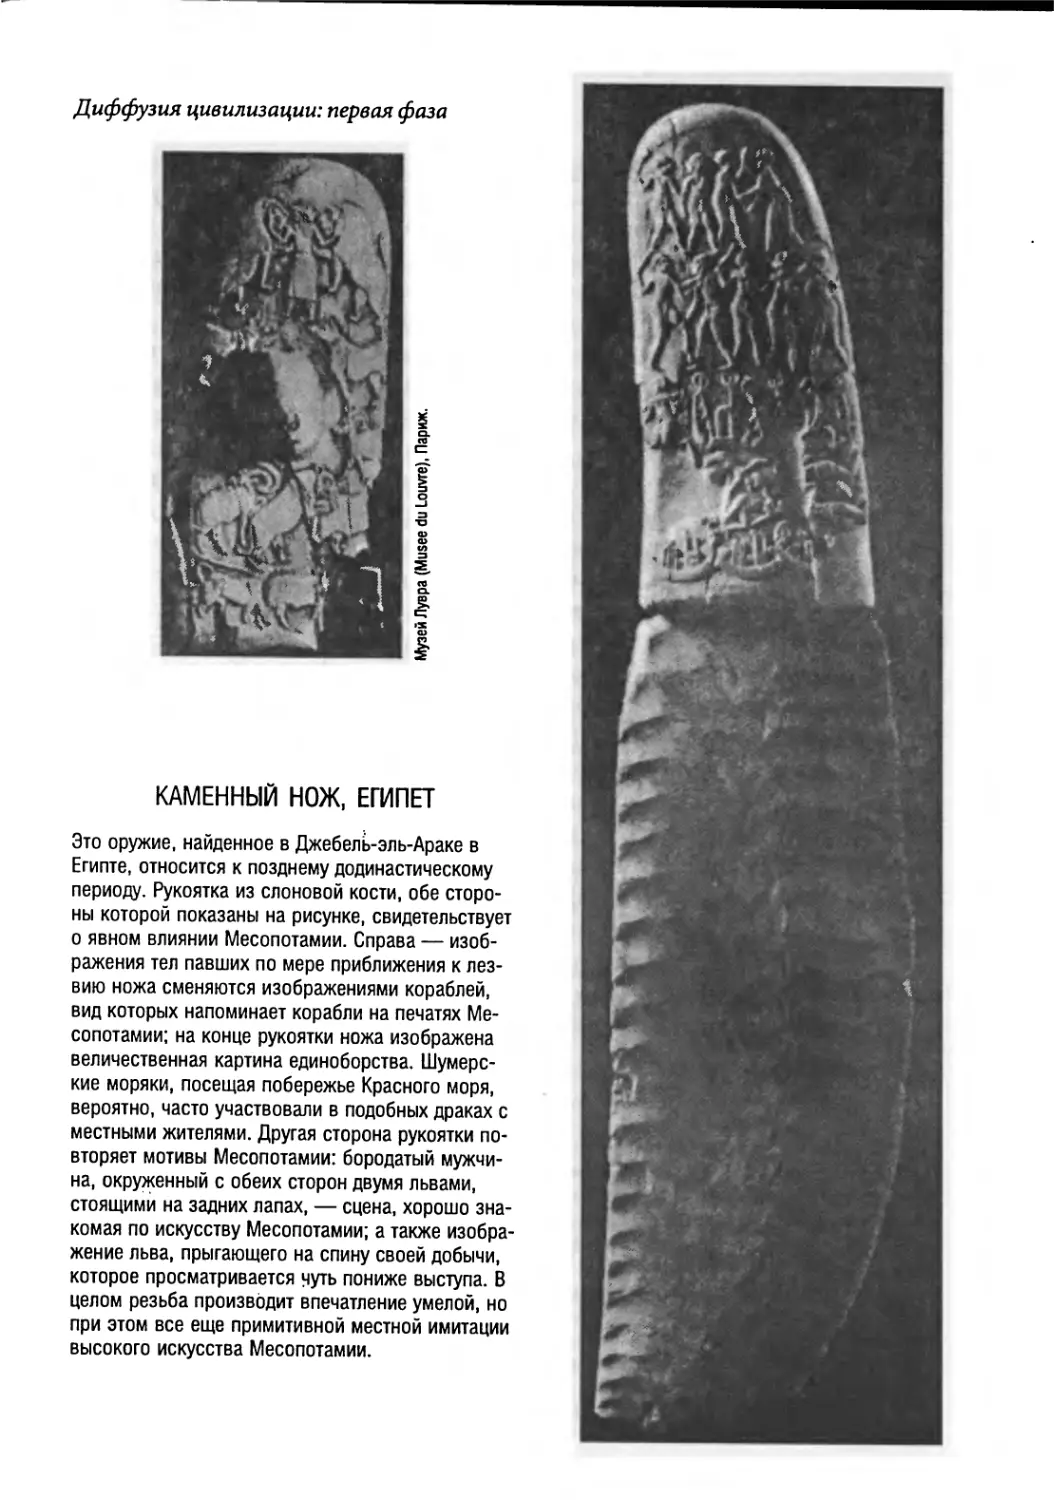 Каменный нож, Египет [121]